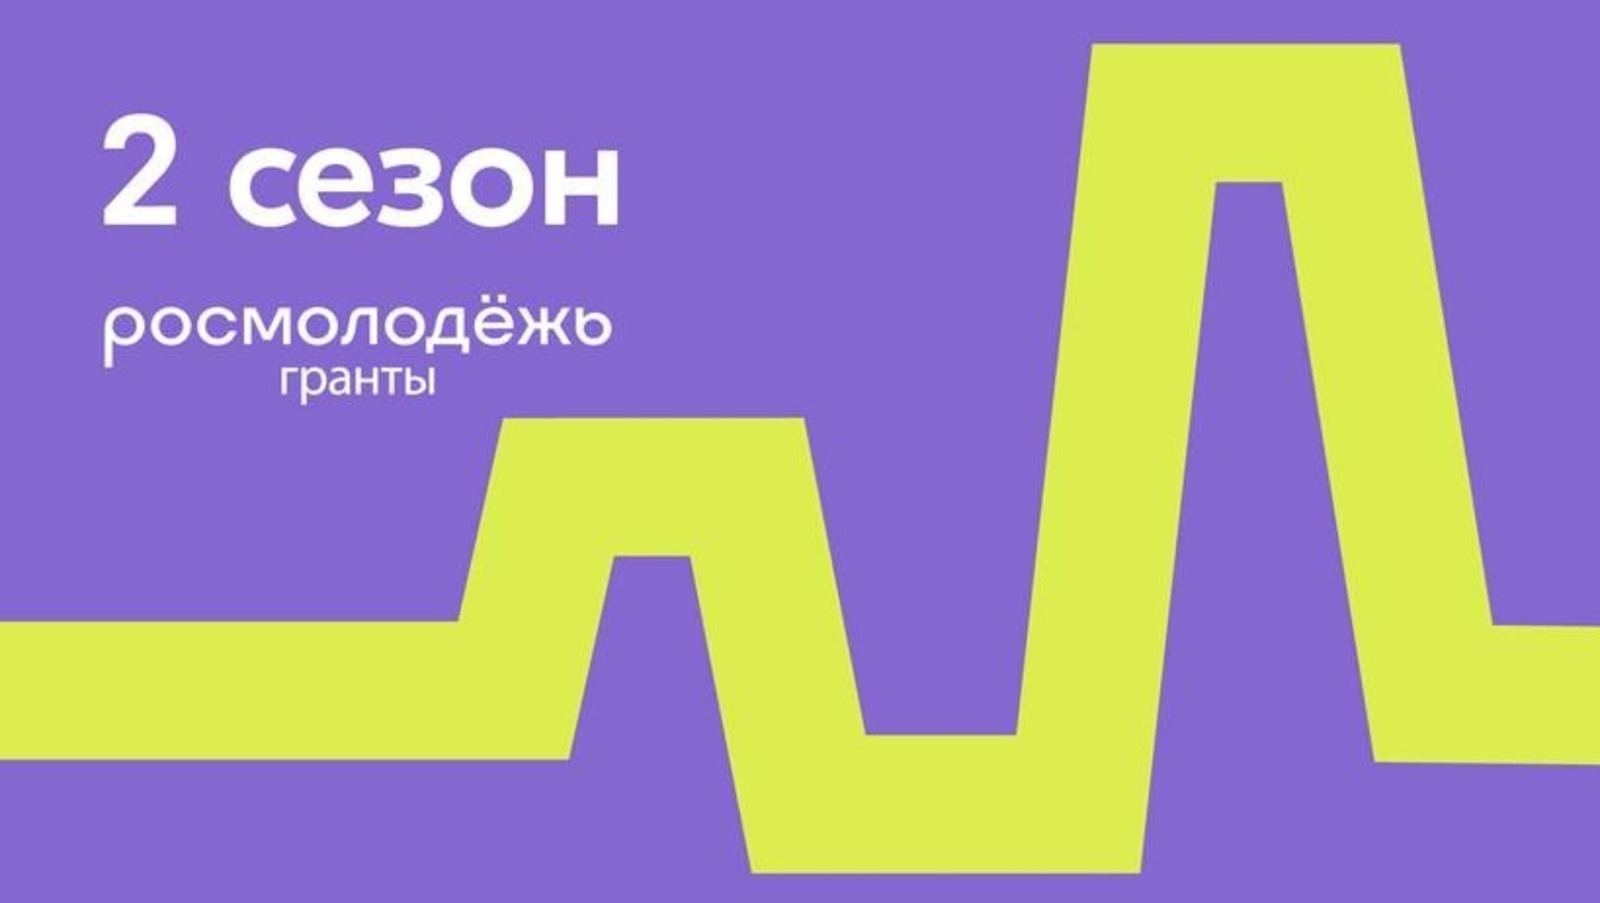 Инициативная молодежь Башкирии может получить до 1 млн рублей